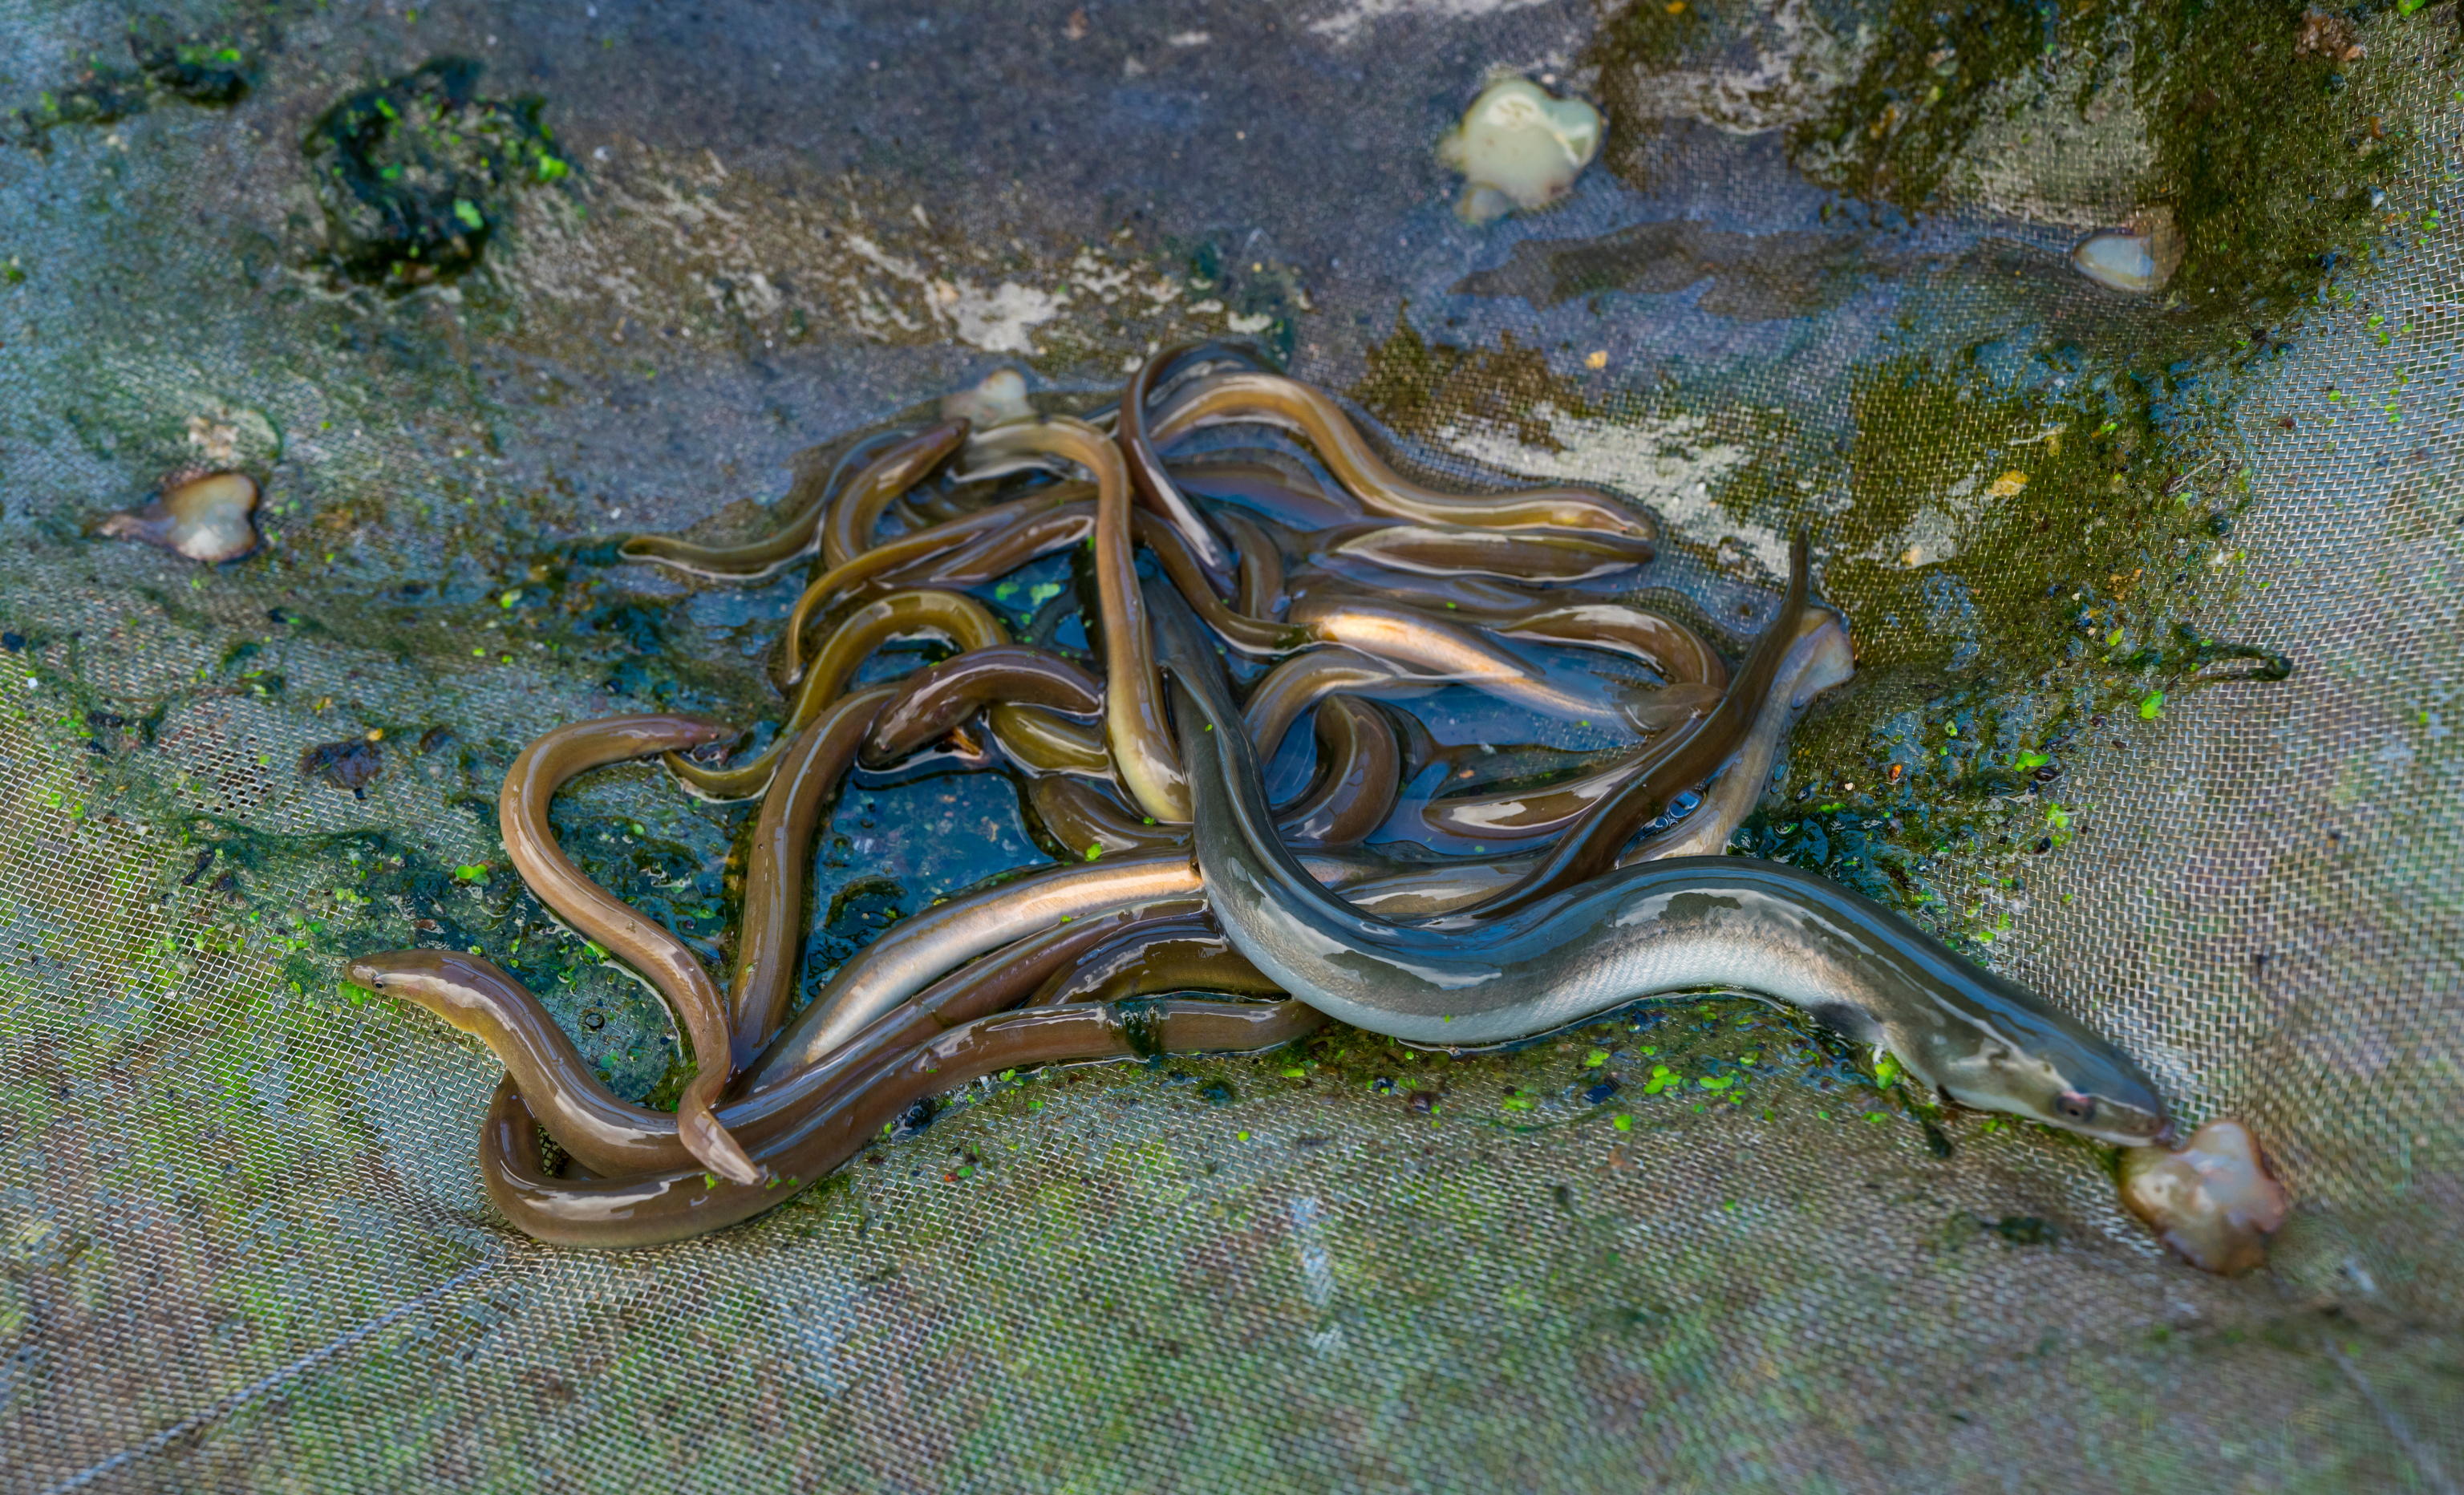 Liberacin de anguila europea (Anguilla anguilla) en el ro Saja para fortalecer la poblacin y evitar su desaparicin